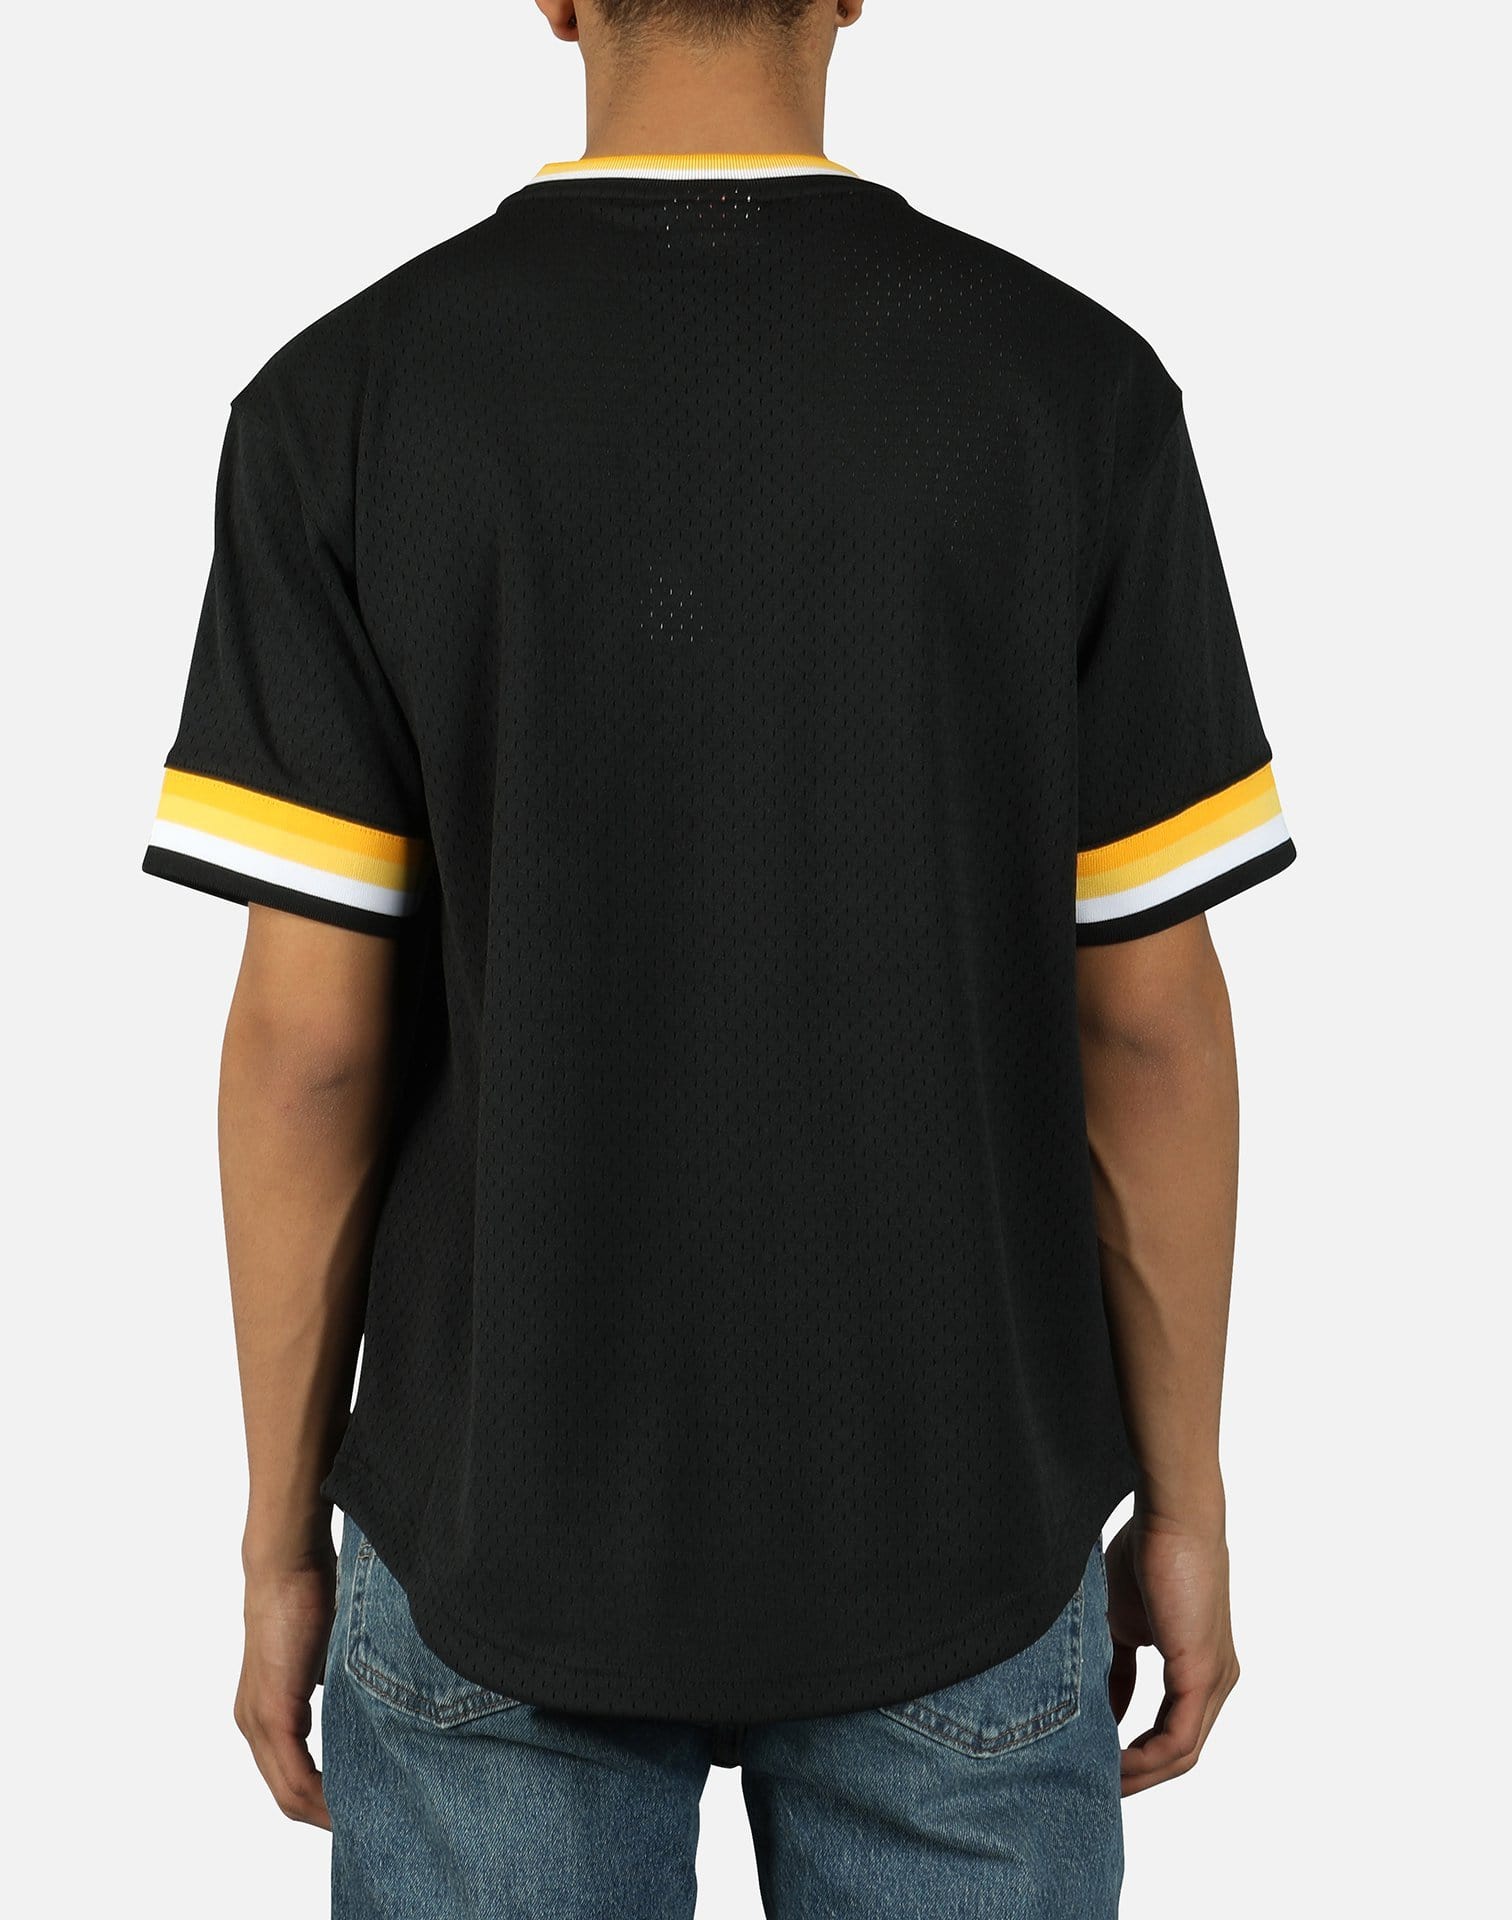 Stitches Pittsburgh Pirates Baseball Gray V-Neck Jersey Shirt Size L/XL